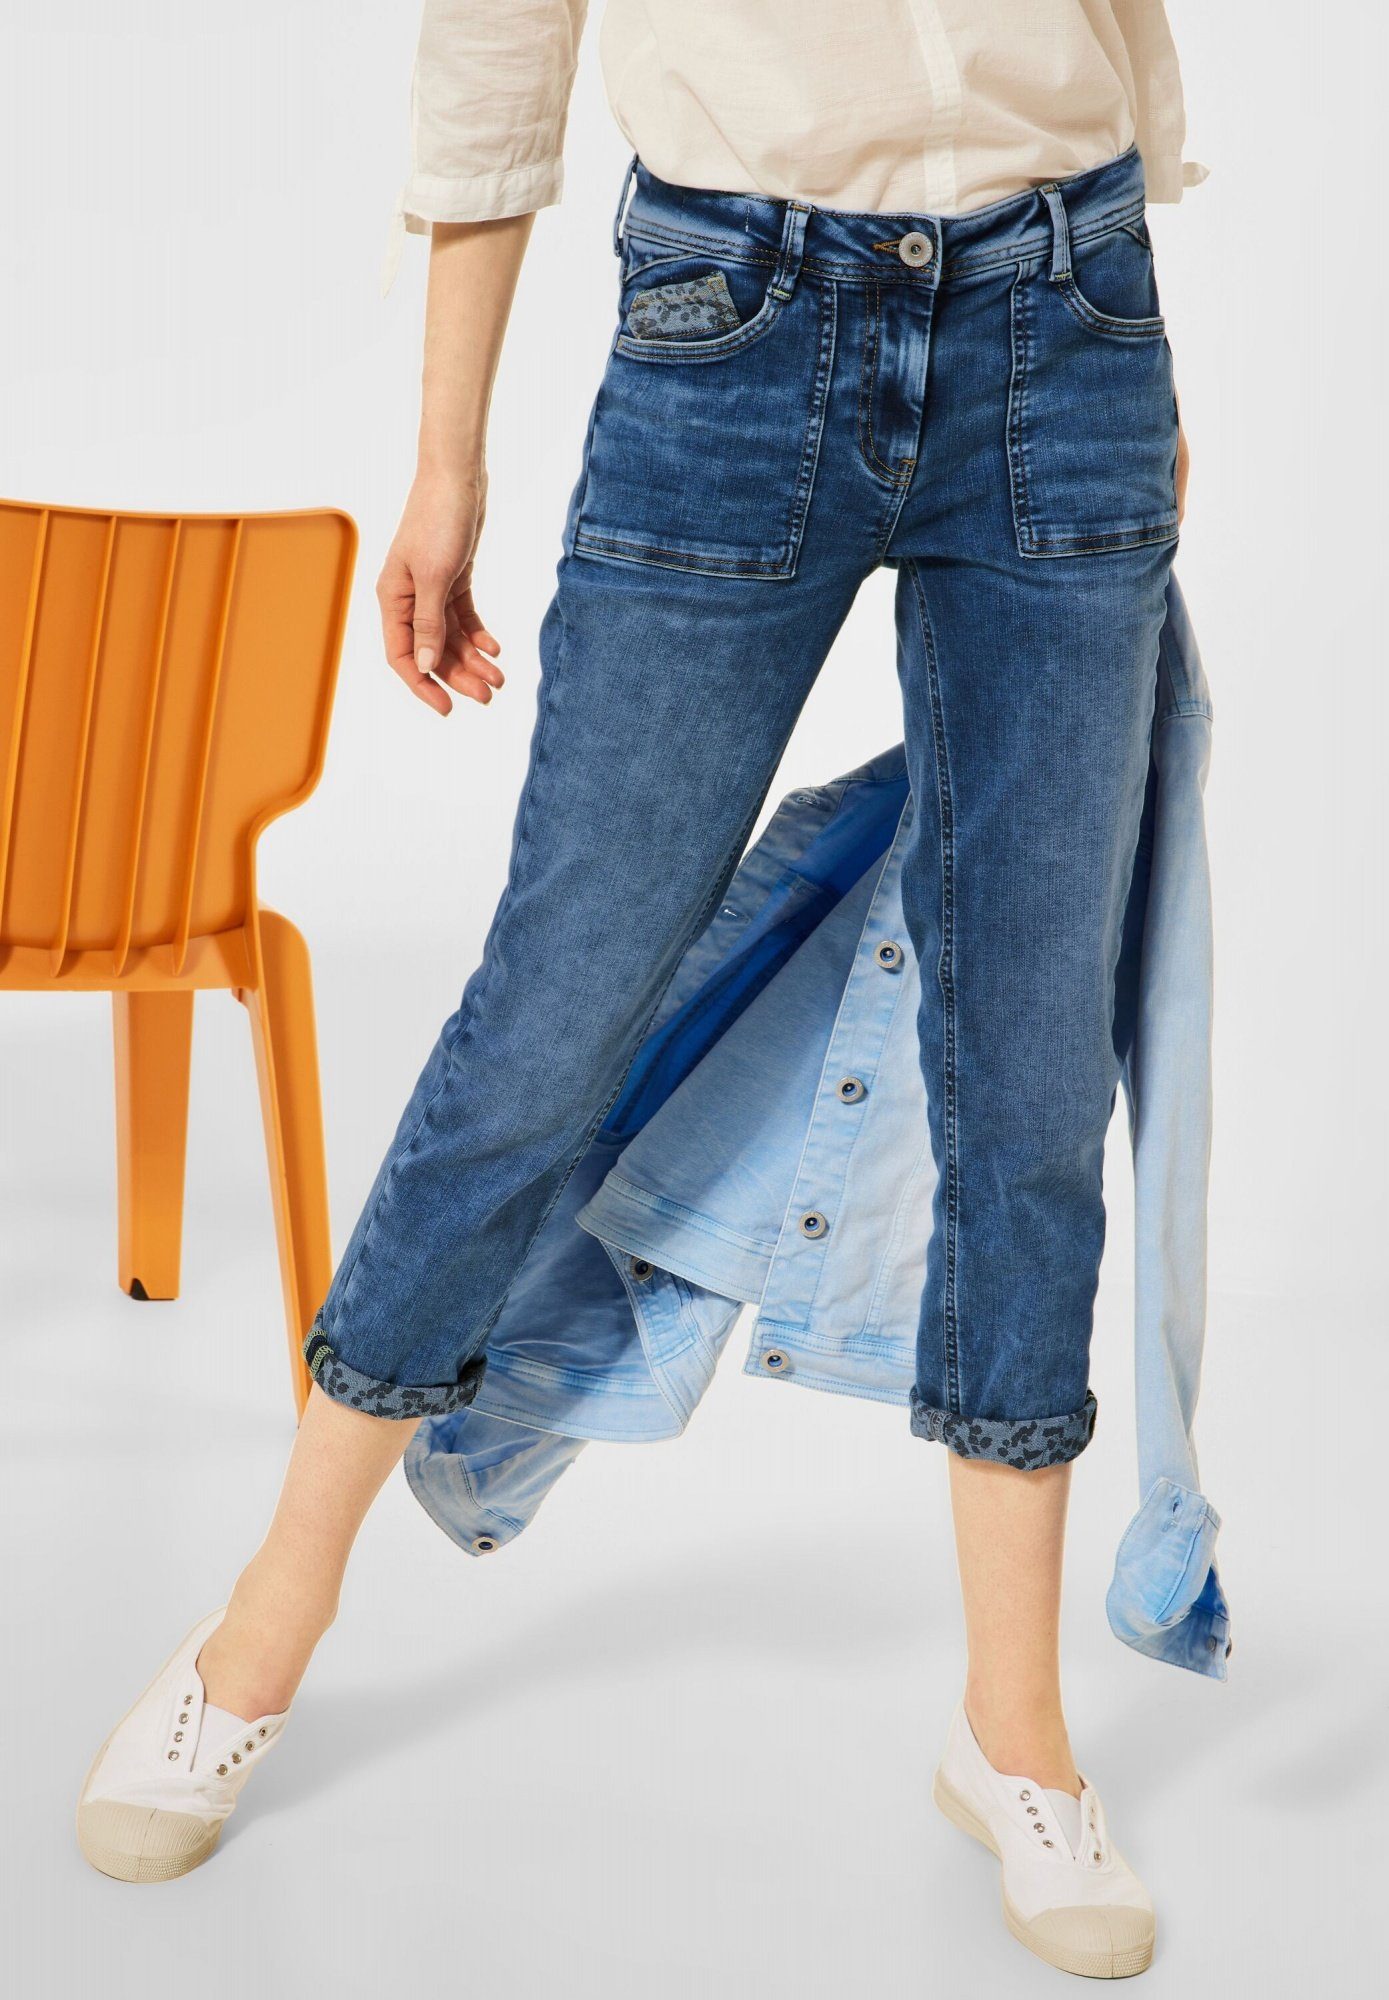 Cecil 7/8-Jeans Scarlett Five Pockets, Denimstyle Hose in einer  mittelblauen Waschung